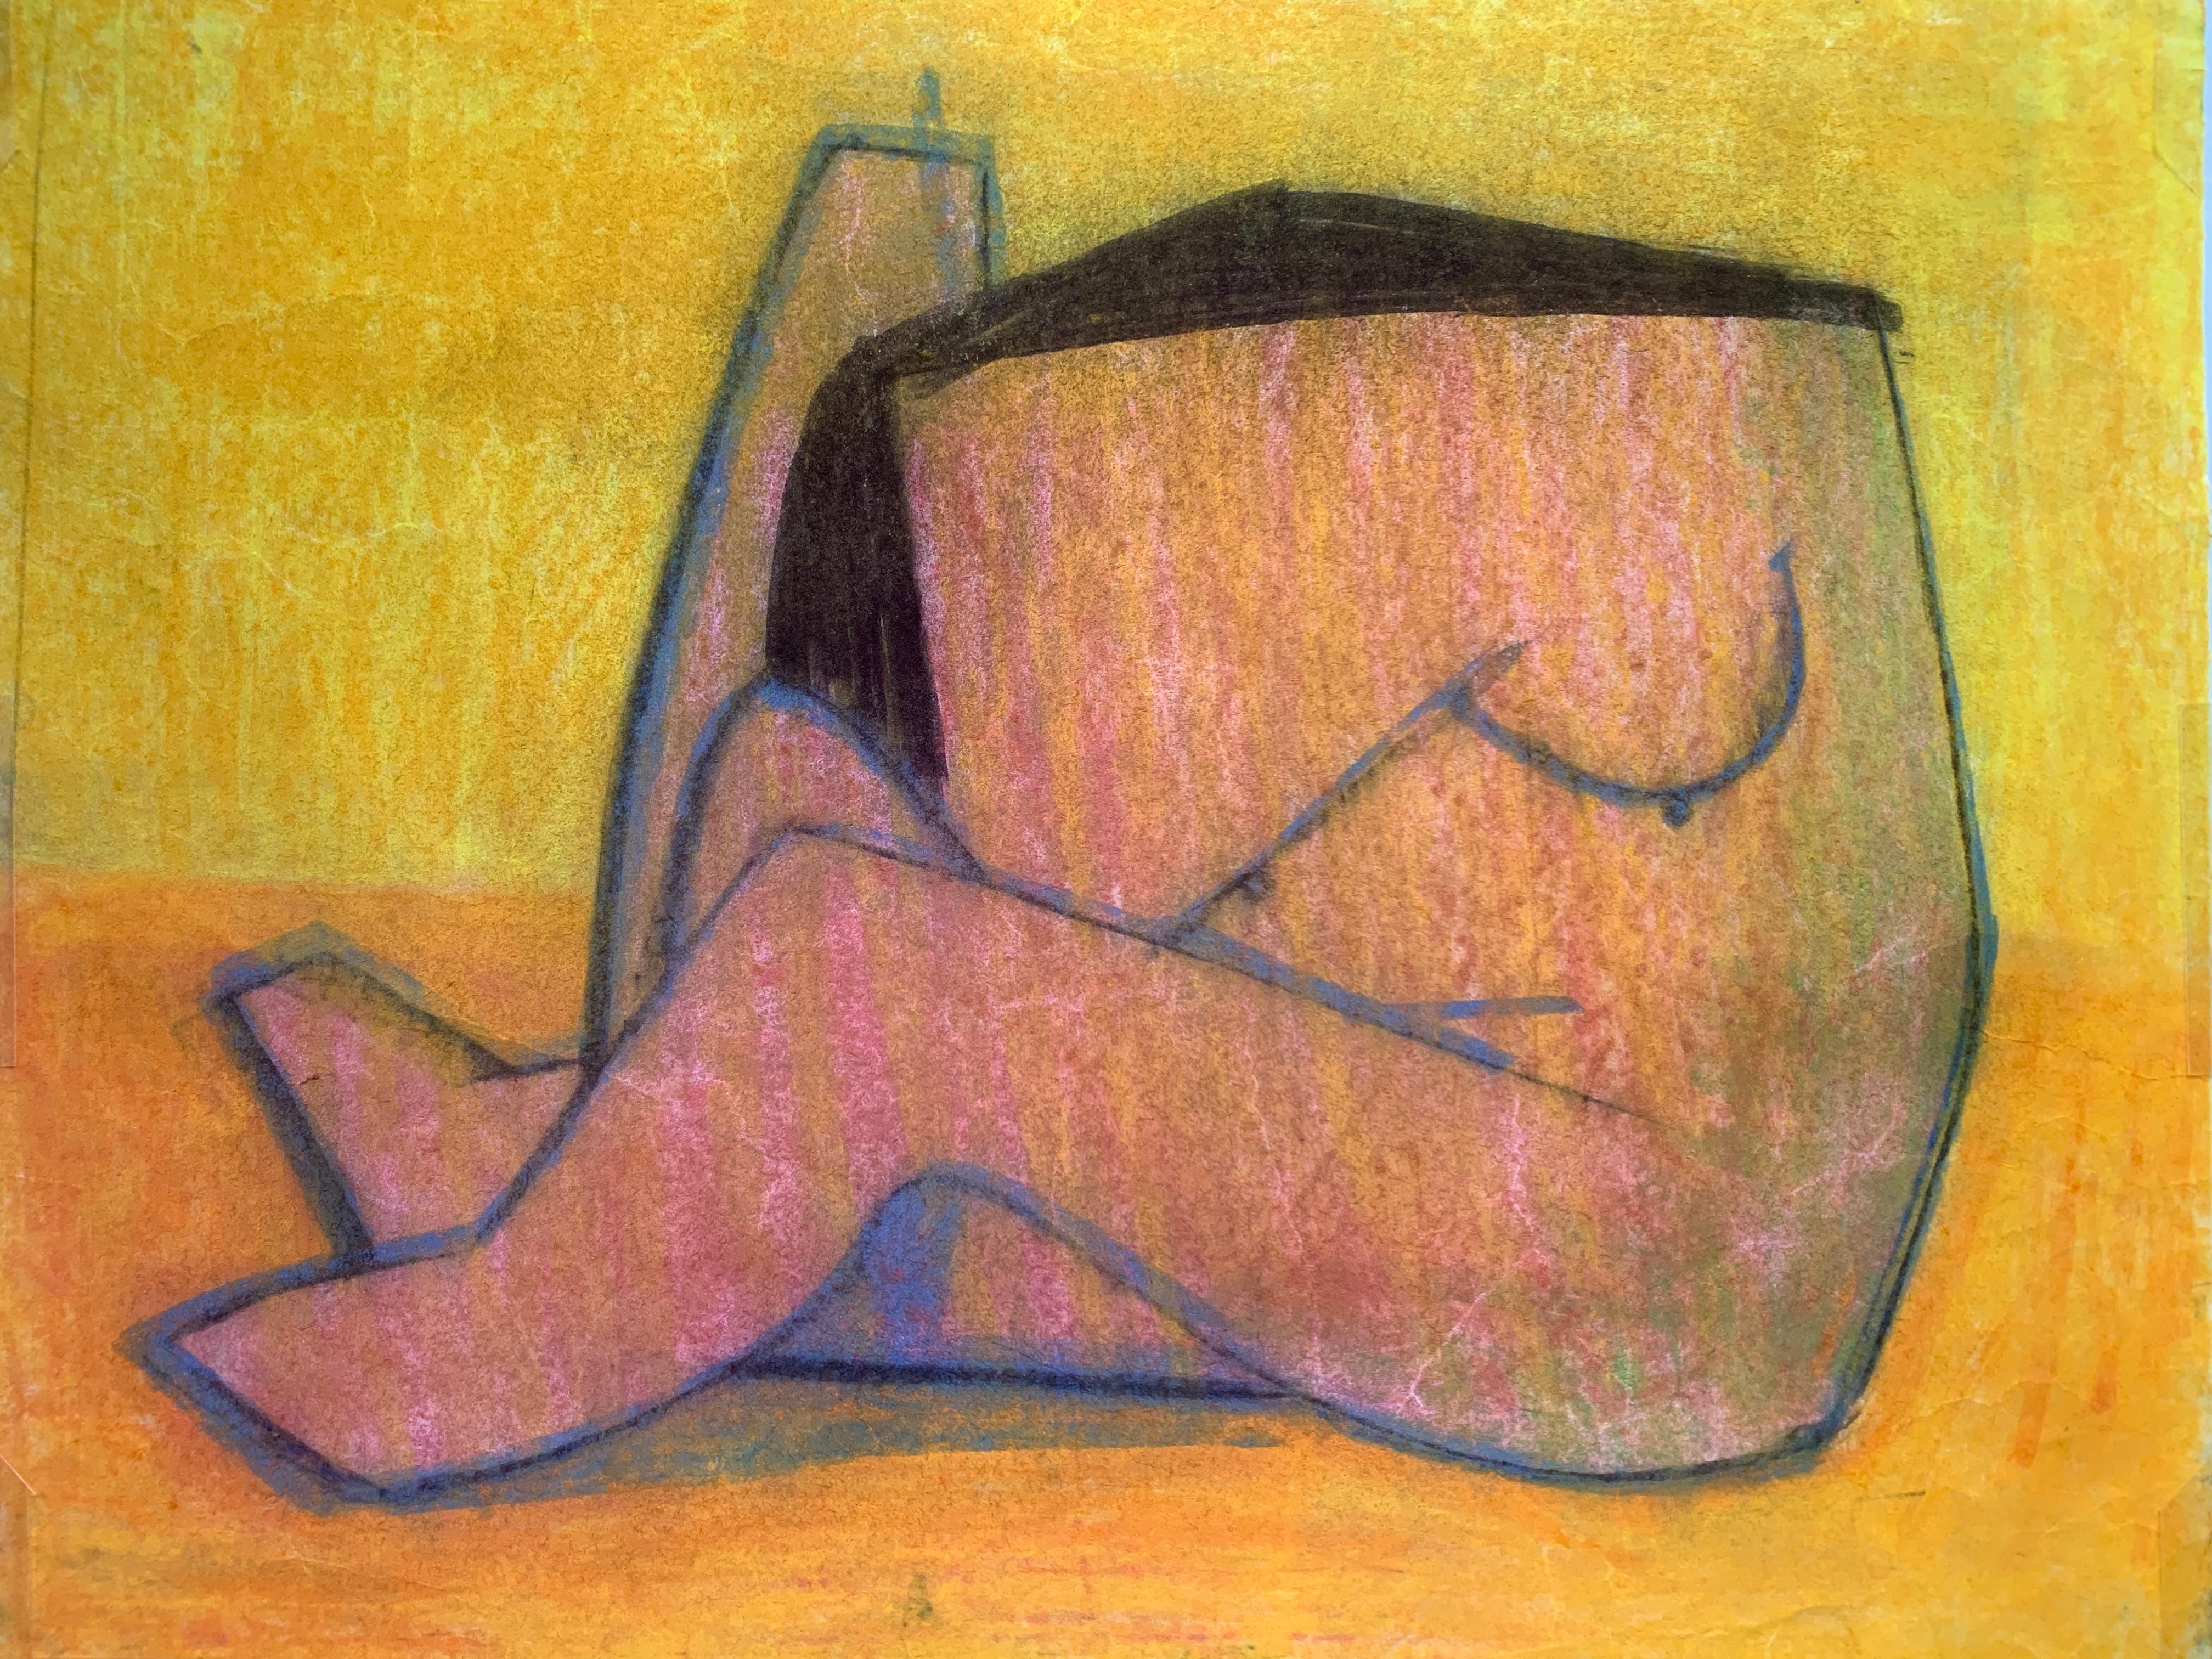 "Figure abstraite orange" des années 1970 - Dessin de nu féminin pastel - Benoit Gilsoul 